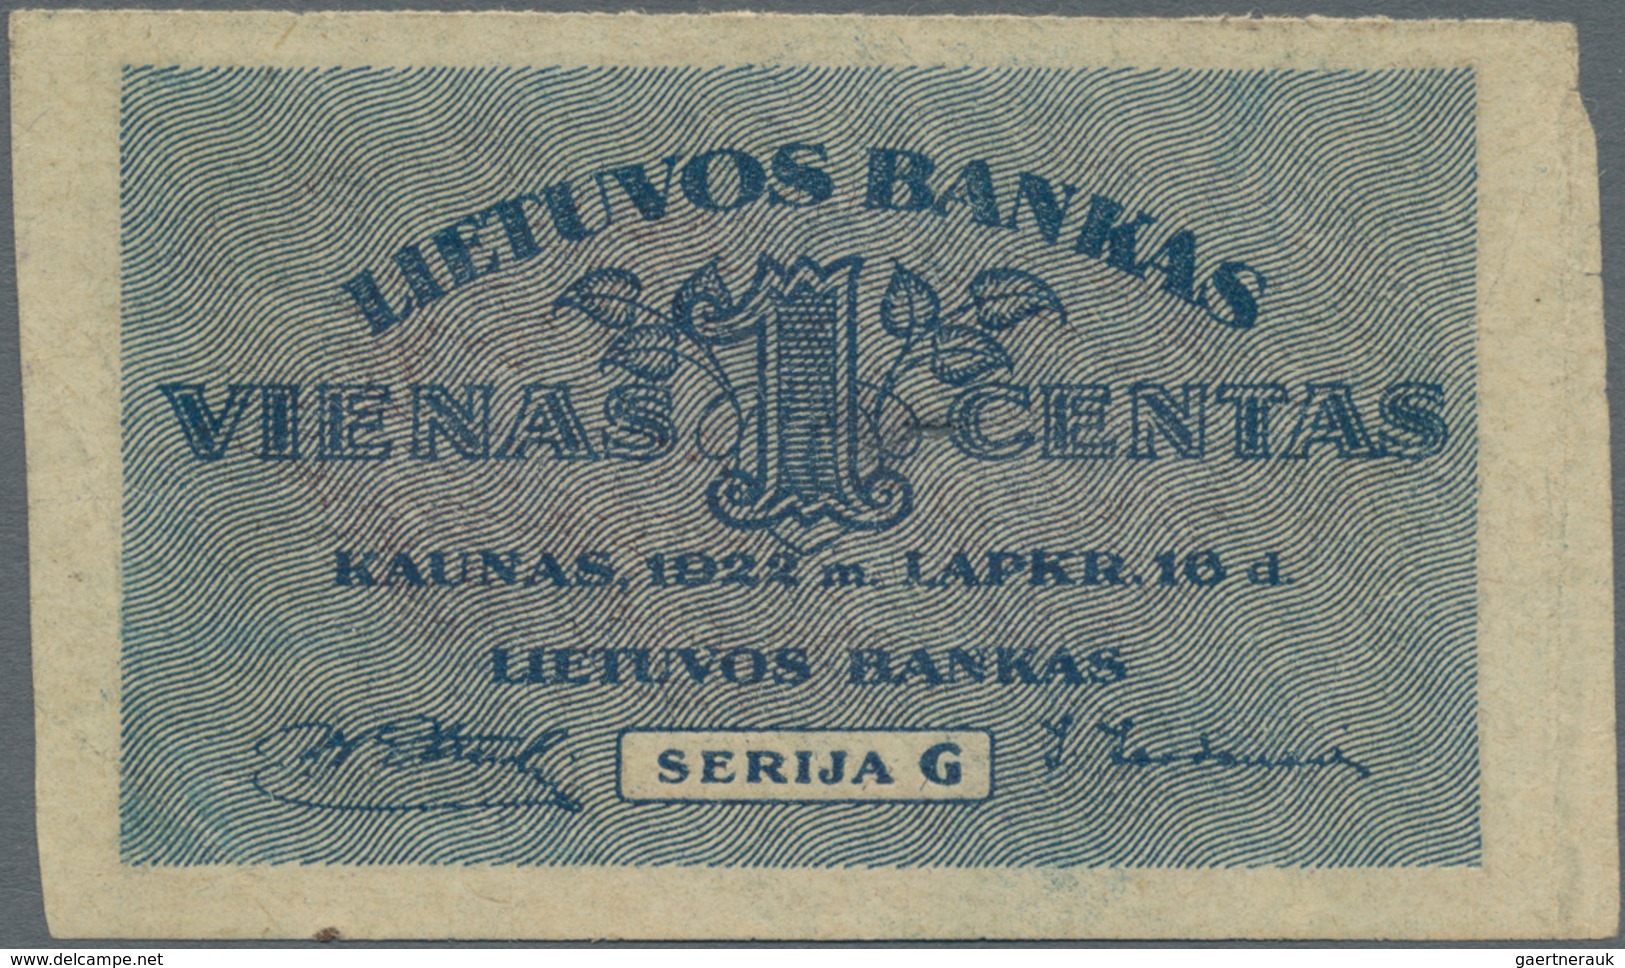 Lithuania / Litauen: 1 Centas 1922 Uniface - Front Only Without Underprint Color, P.7a Misprint, Sma - Litauen